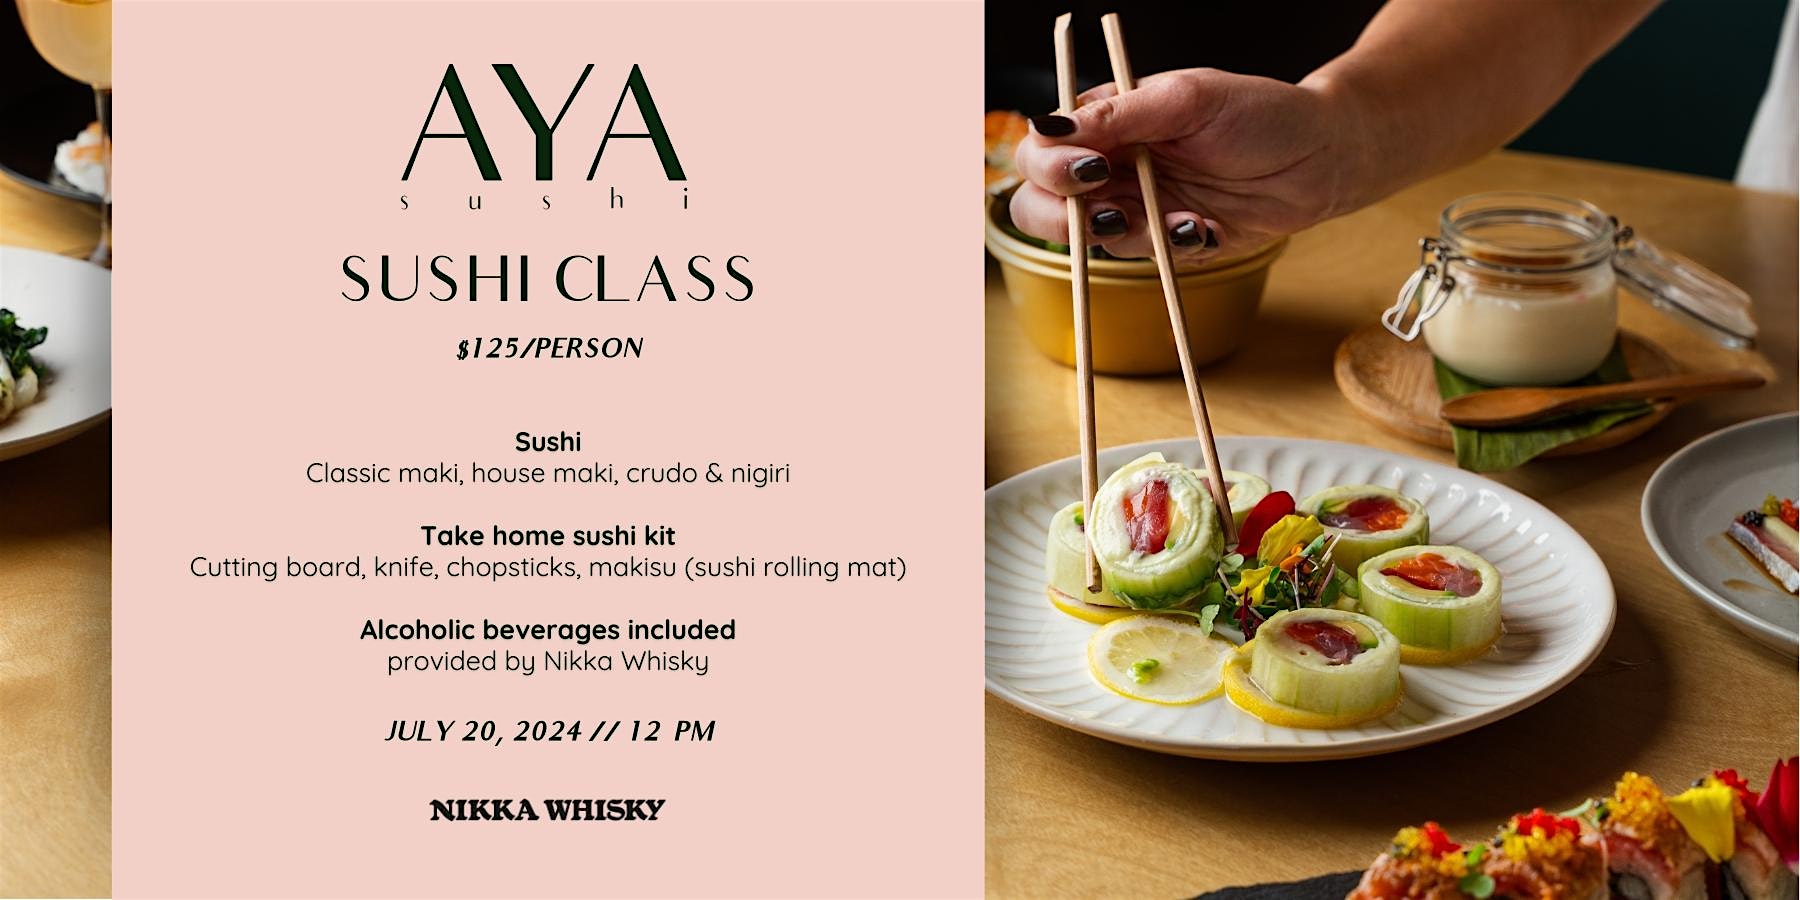 Aya Sushi Class